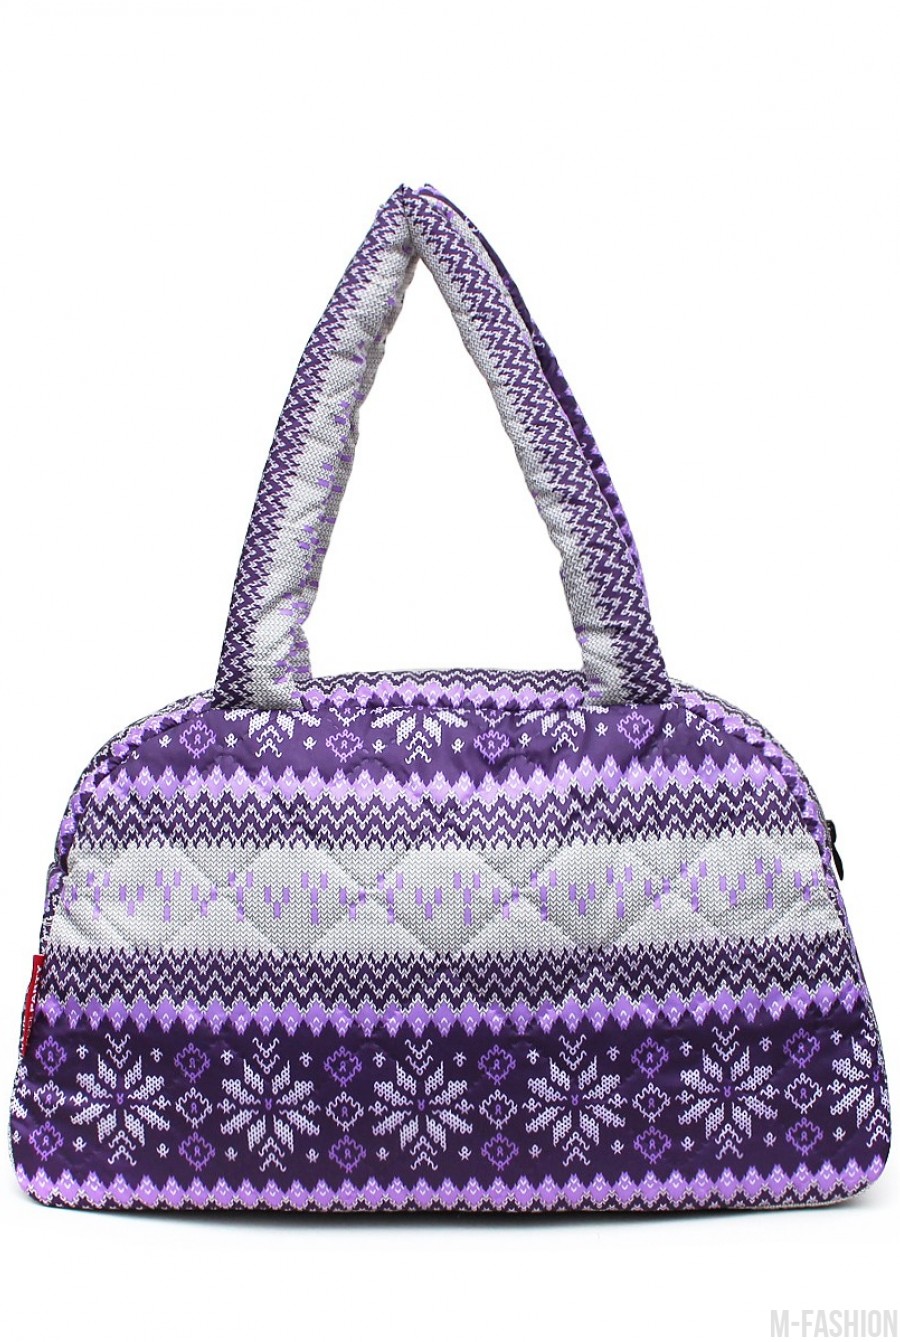 Фиолетовая сумка-саквояж из болоньи с северным орнаментом - Фото 1